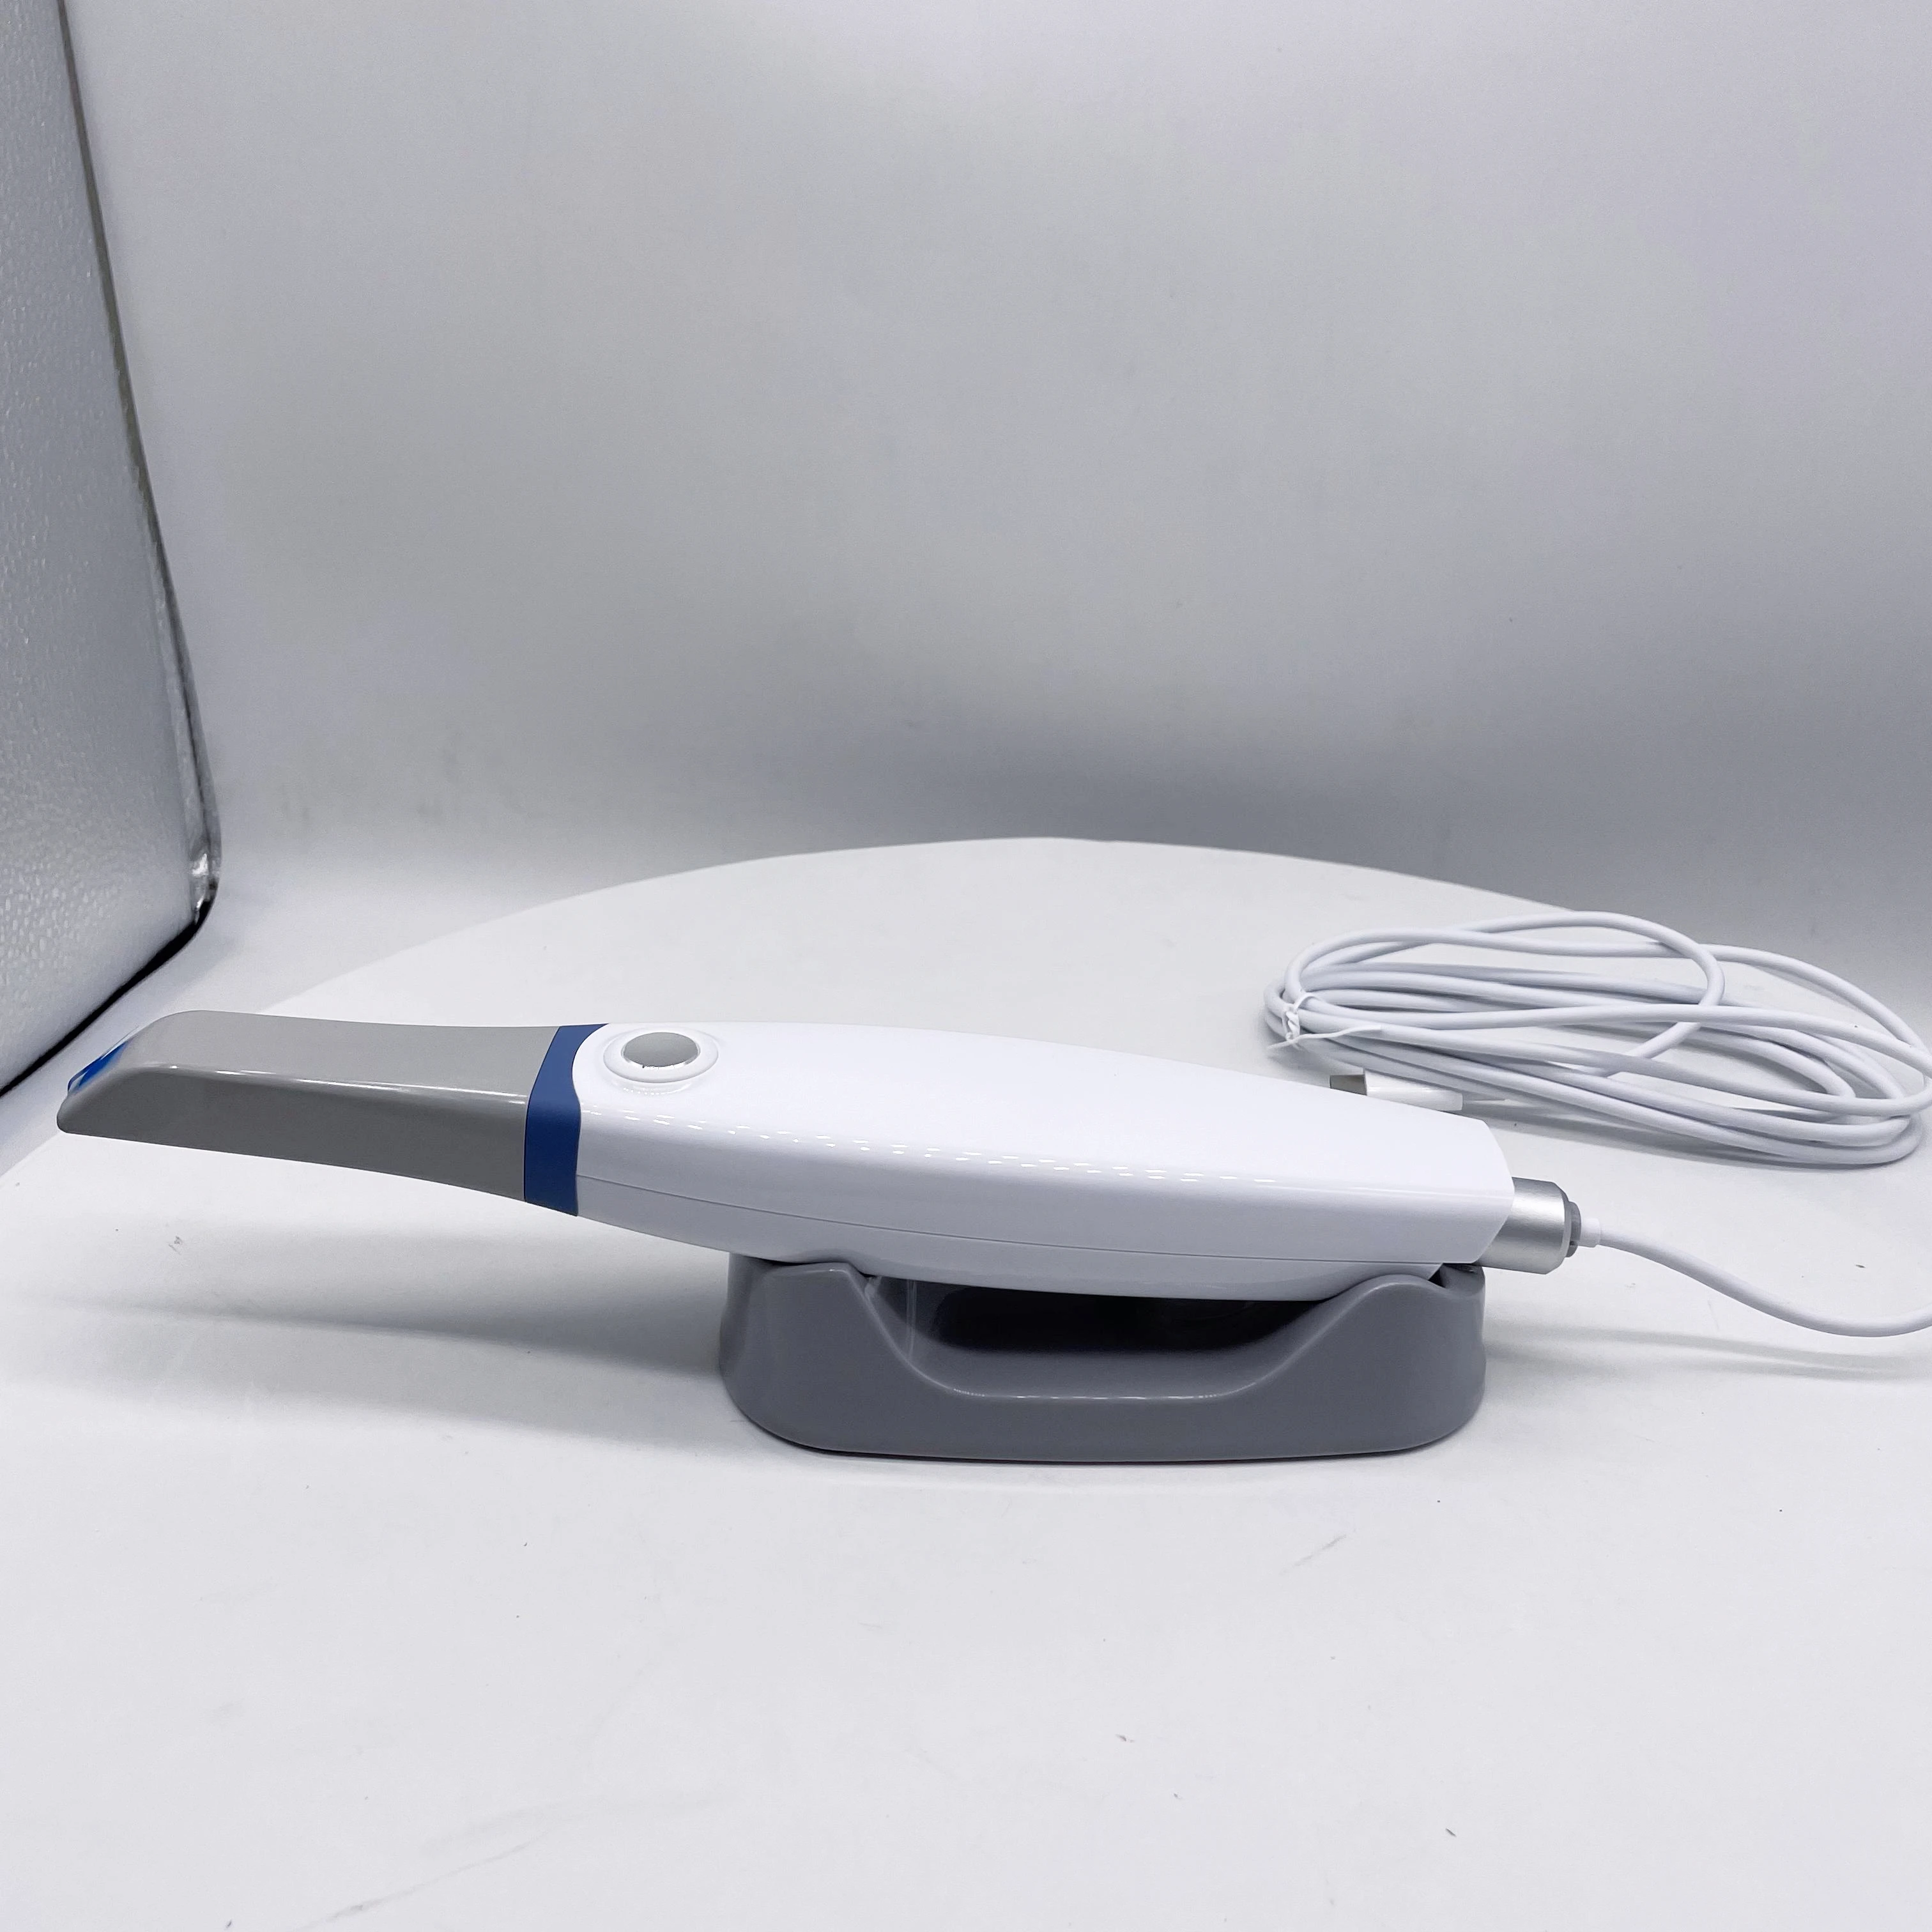 

2023 Новый интраоральный сканер, одобренный CE, версия 3,0, стоматологический прибор для захвата изображения, стоматологический рентгеновский сканер для стоматологического цифрового сканирования